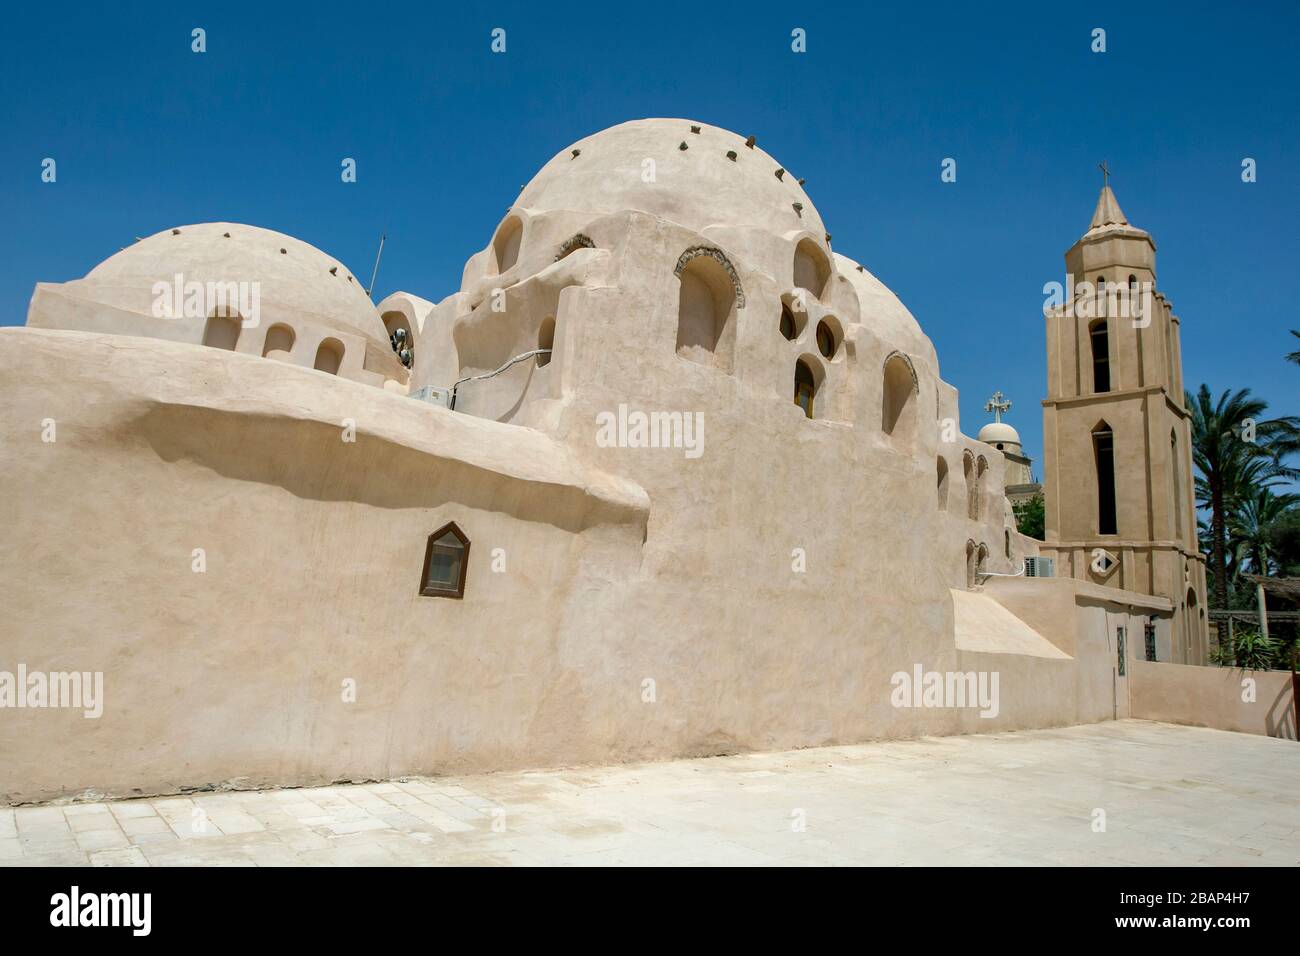 Una torre confina con una sezione a cupola del Monastero di San Bishoy, un monastero ortodosso copto a Wadi El-Natrun in Egitto, fondato nel IV secolo d.C. Foto Stock